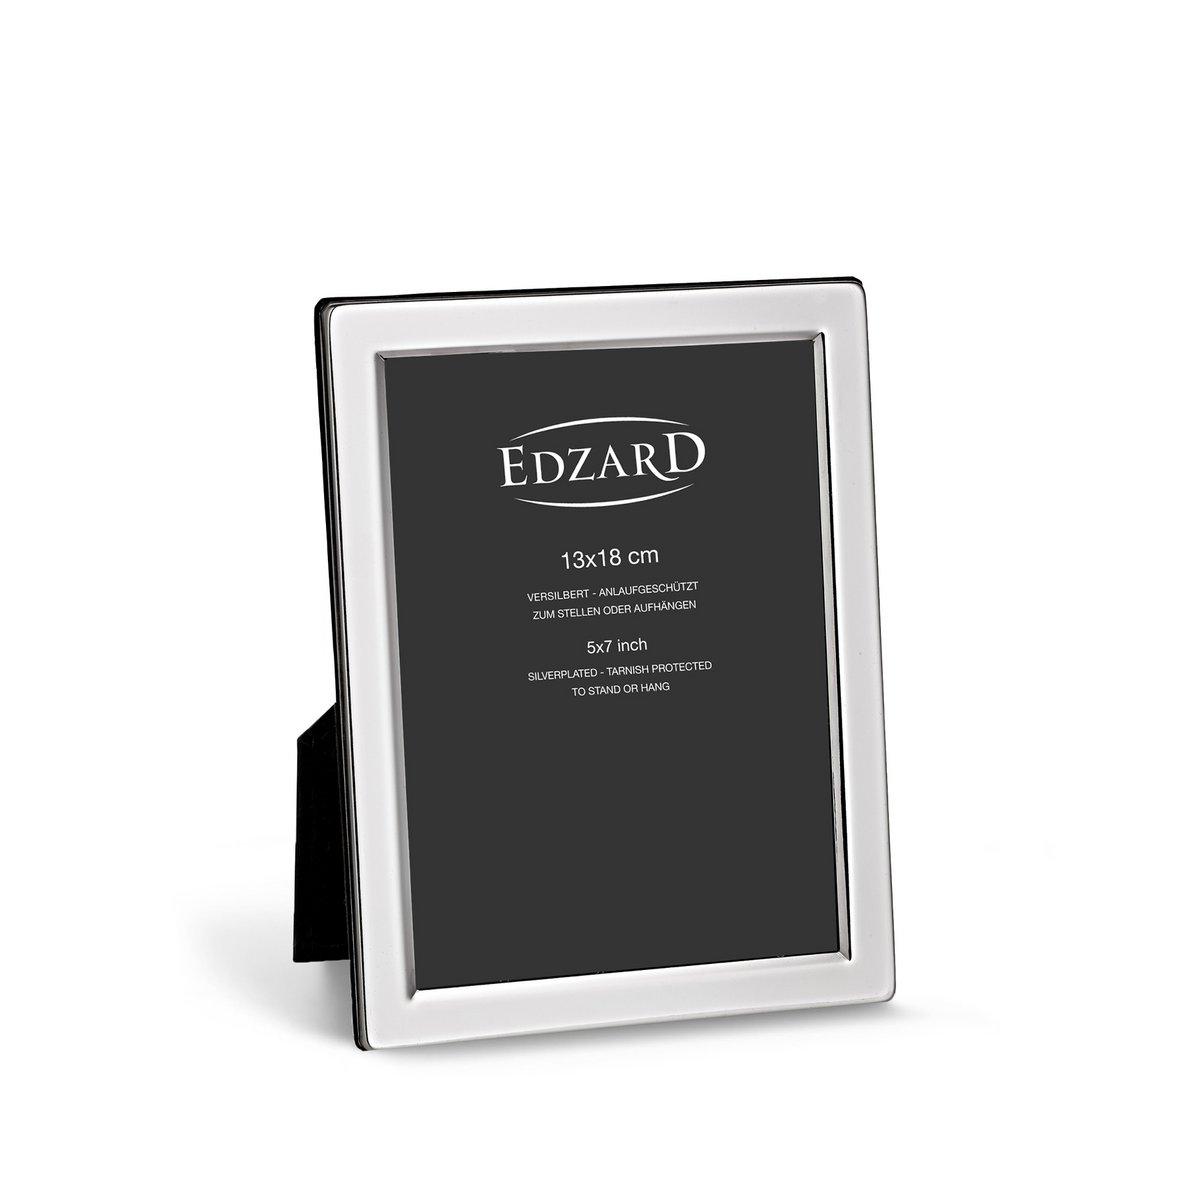 EDZARD Fotorahmen Salerno für Foto 13 x 18 cm, edel versilbert, anlaufgeschützt, mit 2 Aufhängern - HomeDesign Knaus